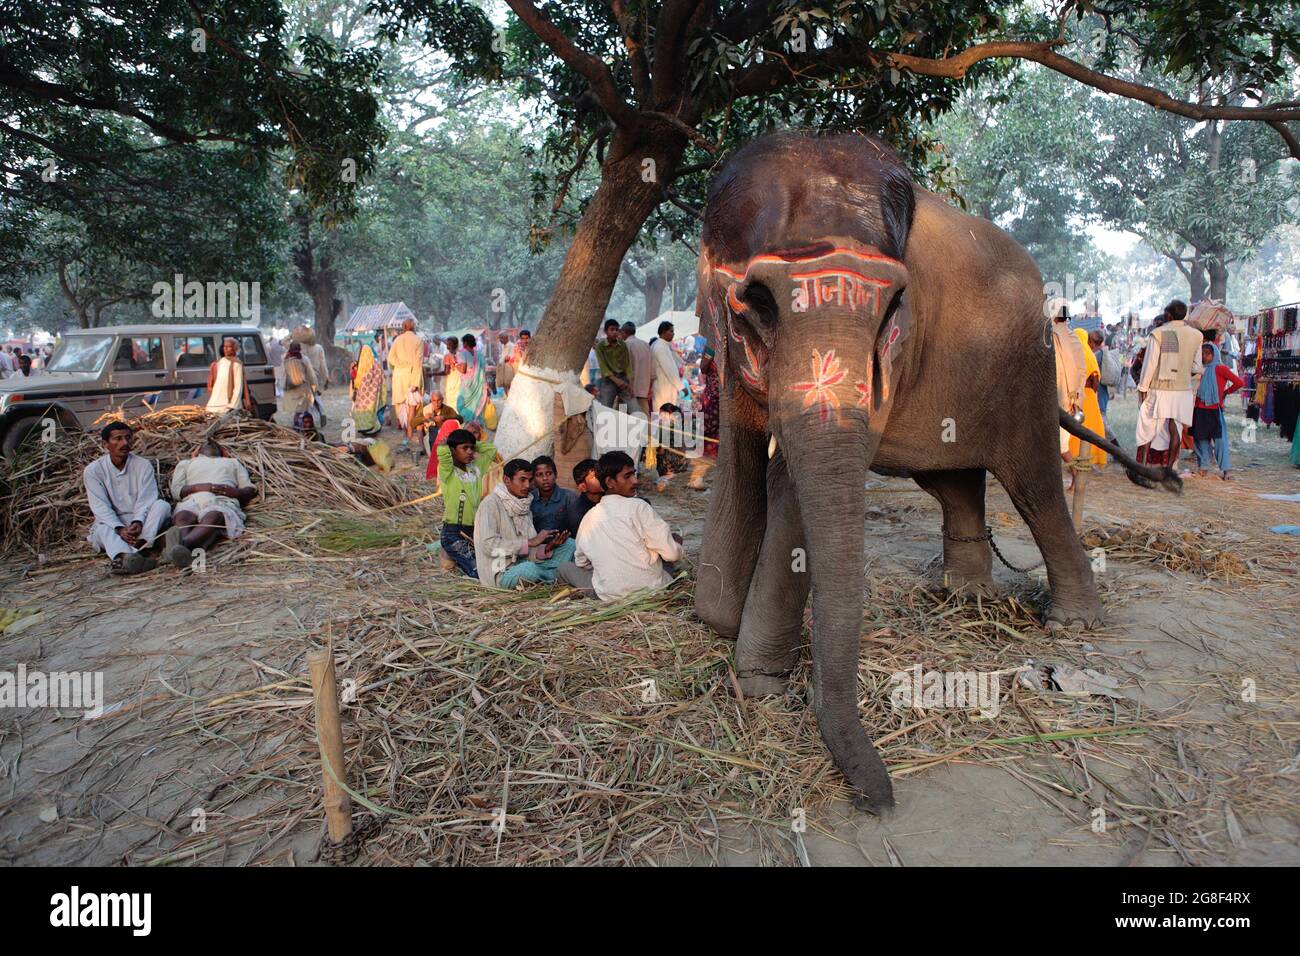 Elefanti decorati sono esposti per la vendita alla fiera di Sonpur, la più grande fiera di vendita di animali in Asia. La fiera ha più di mille anni. Foto Stock